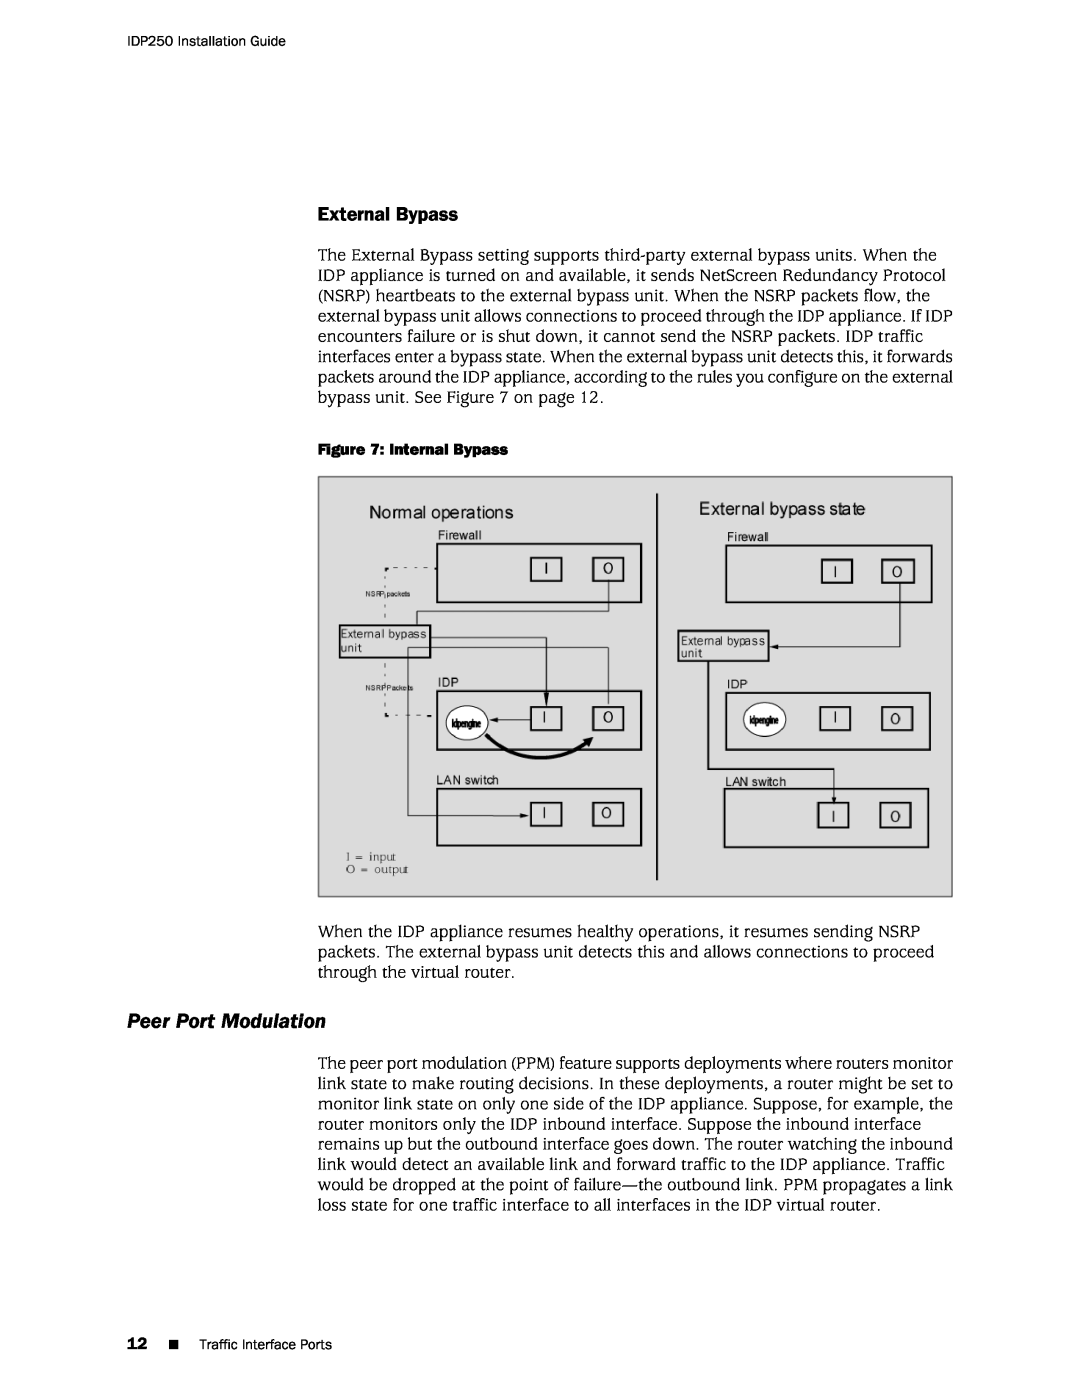 Juniper Networks IDP250 manual Peer Port Modulation, External Bypass 